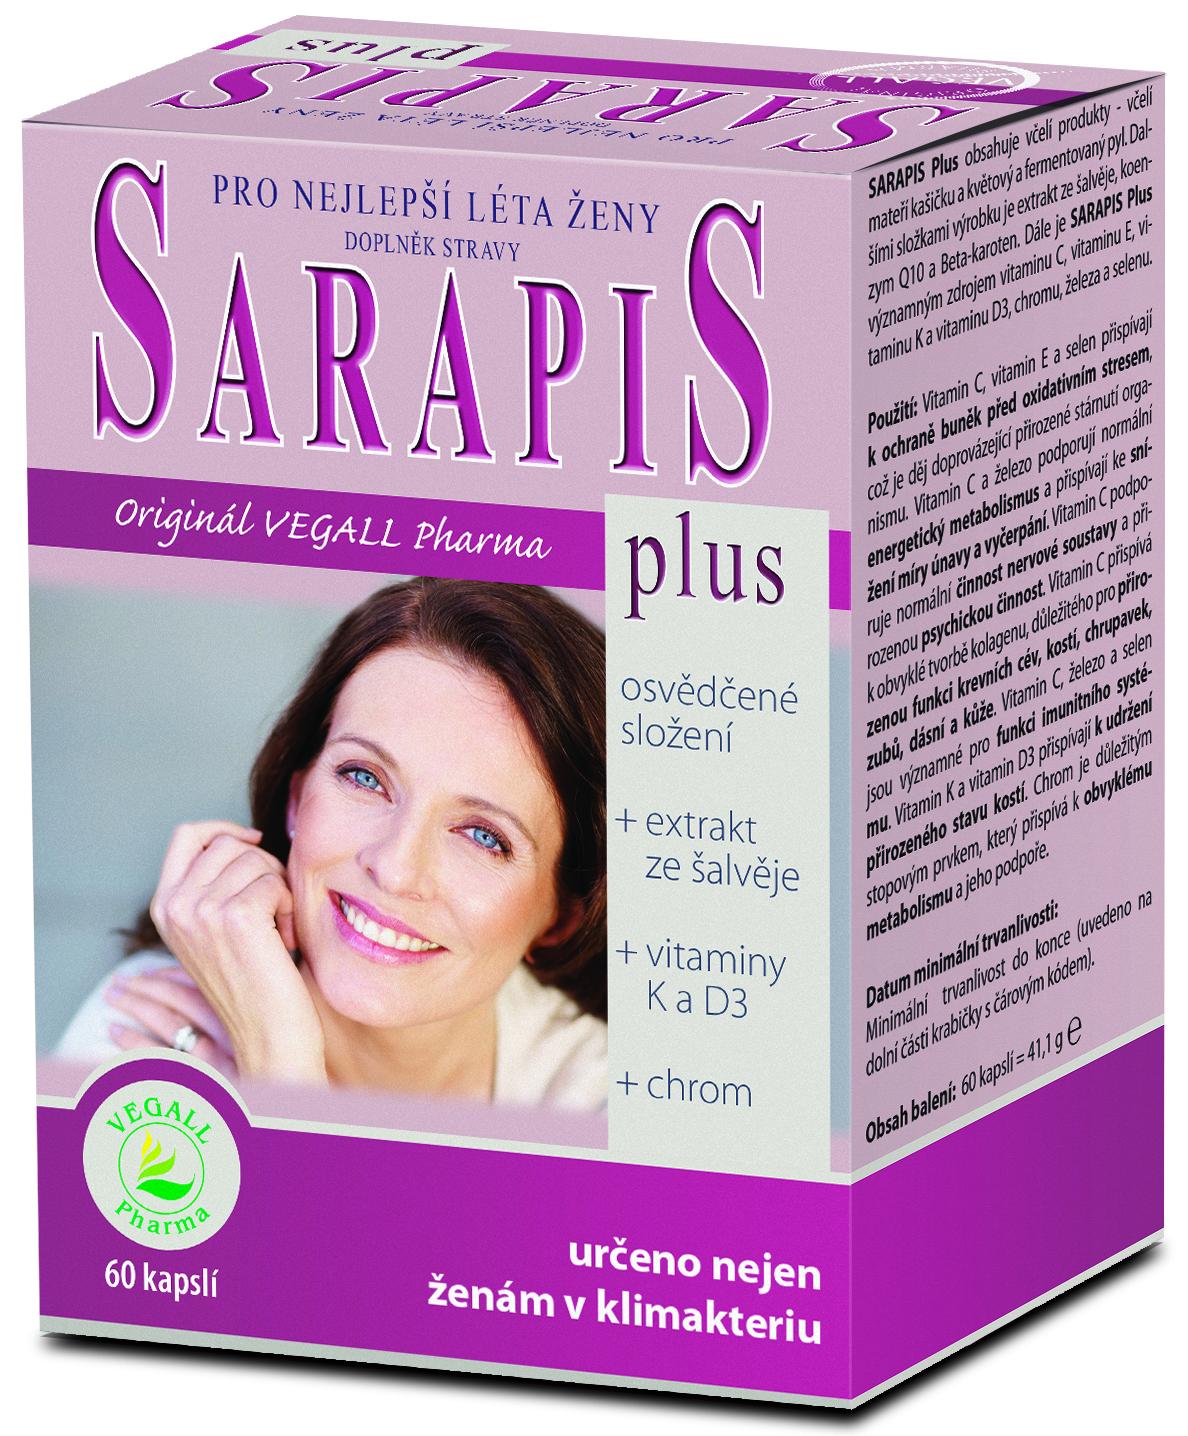 Sarapis plus